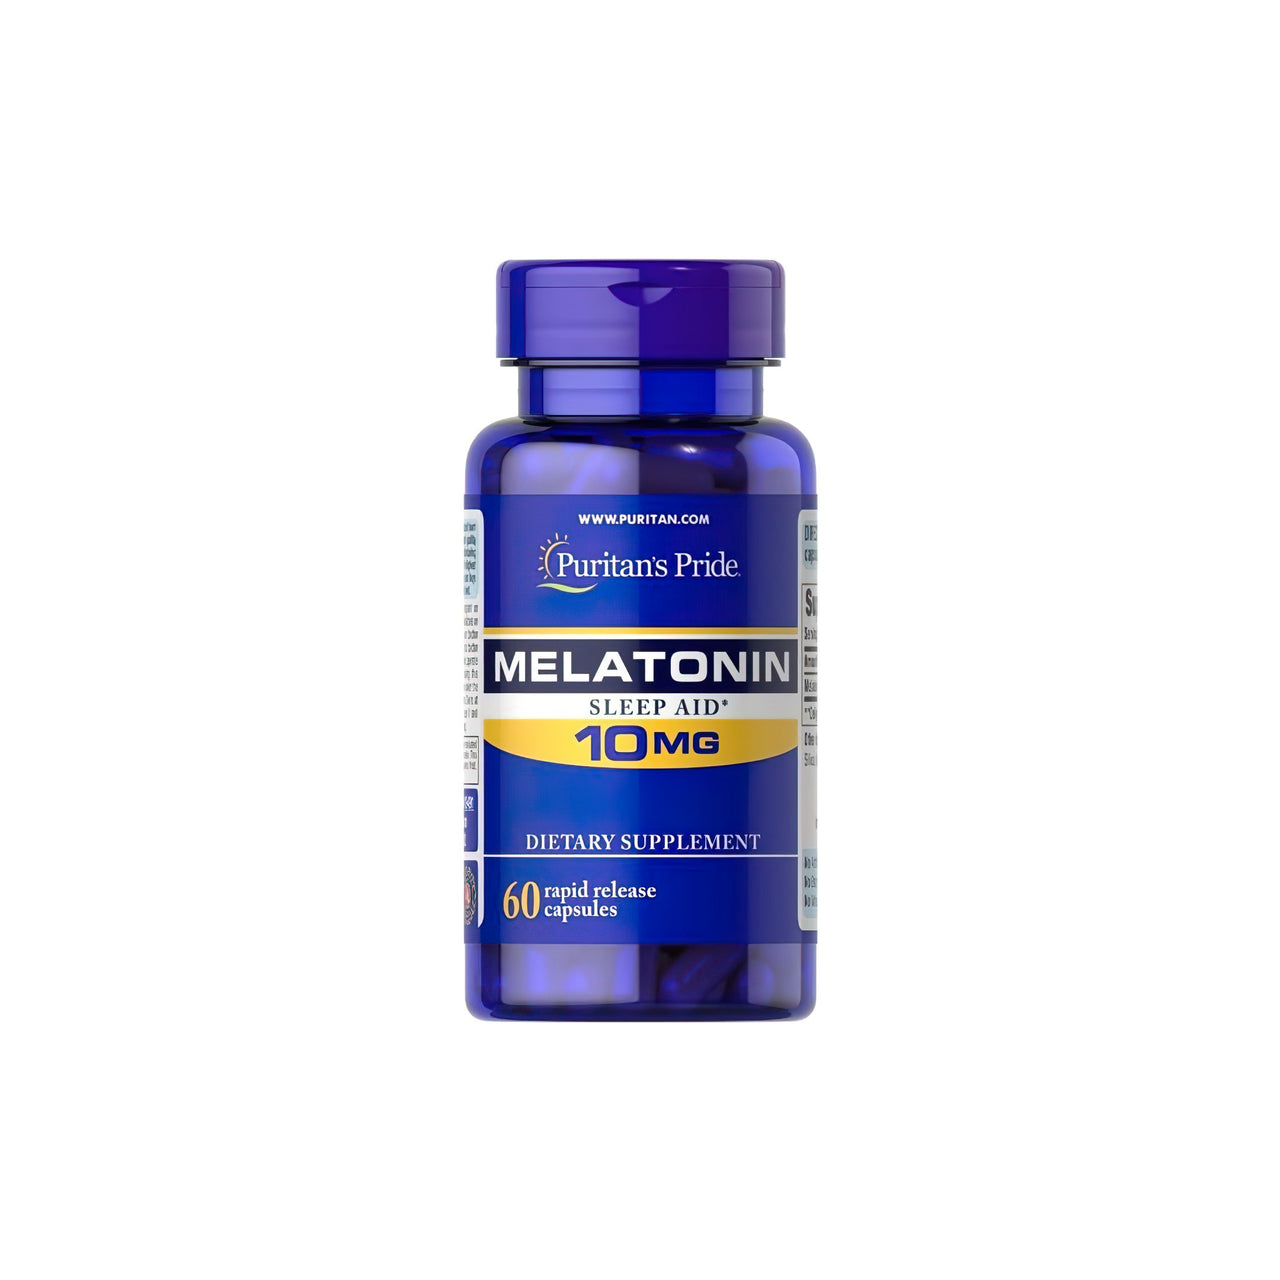 Puritan's Pride Melatonin 10 mg 60 rapid release capsules.